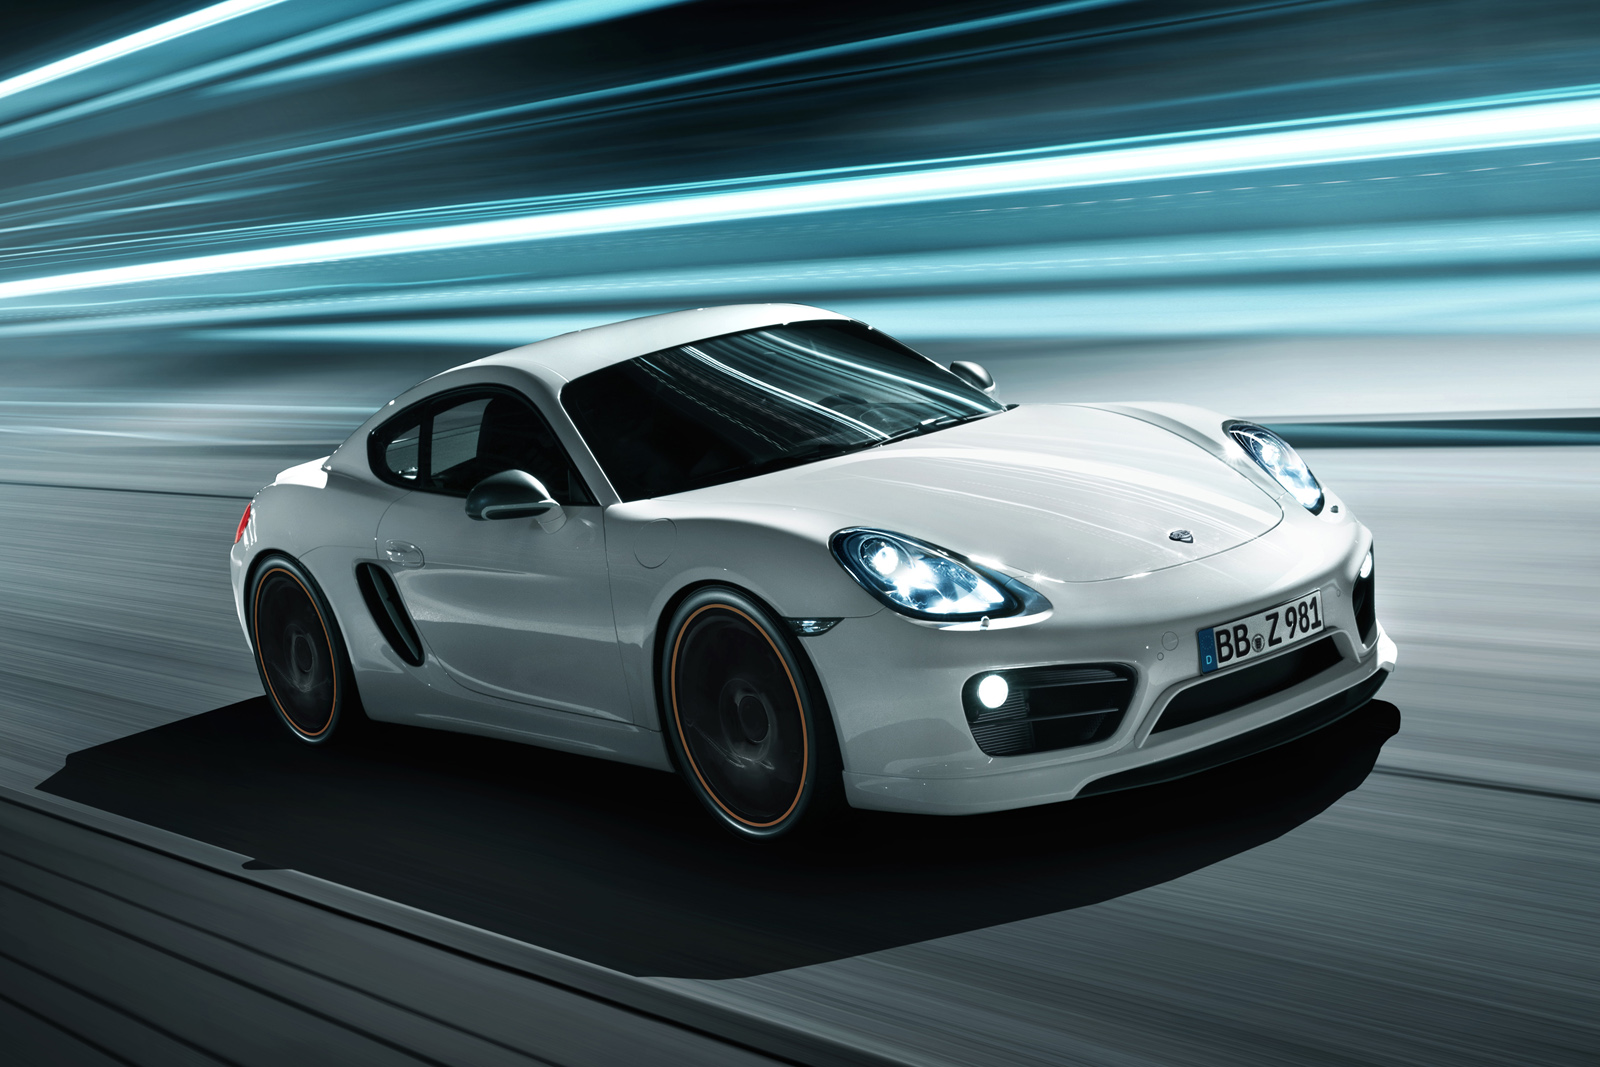 TechArt individualisatie pakket voor nieuwe Porsche Cayman